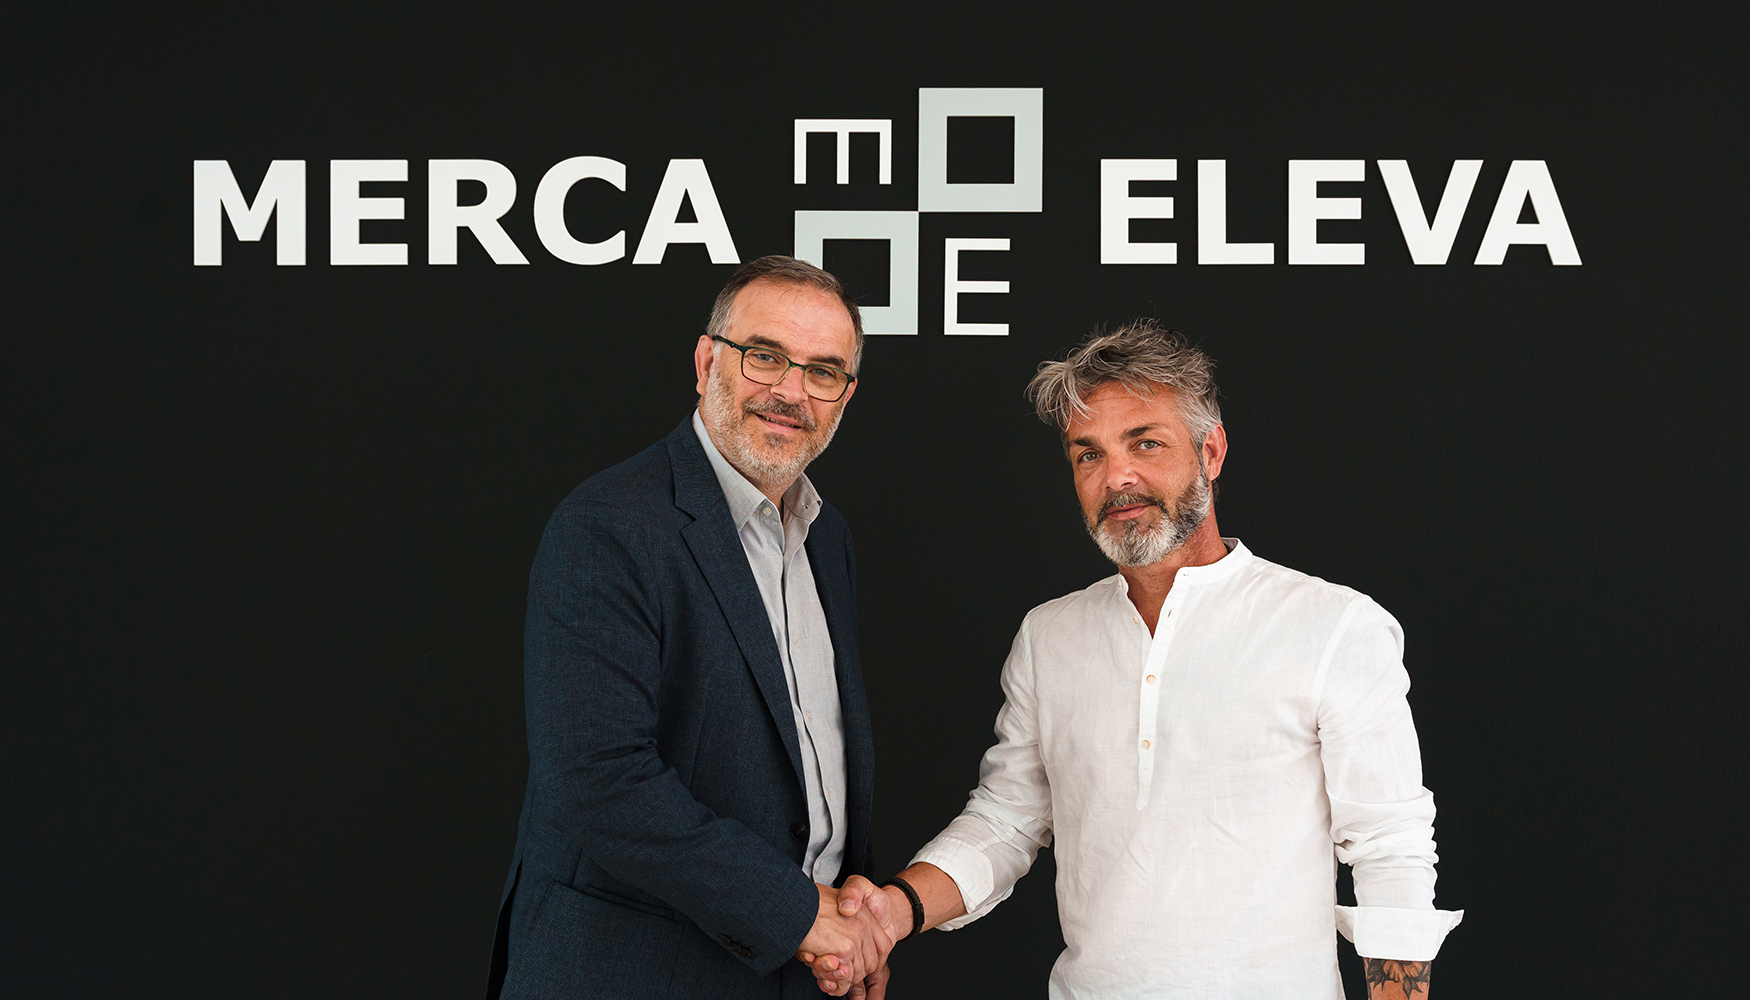 De izquierda a derecha: Jordi Varela, CEO de Mercaeleva, y Vctor Alonso, nuevo director tcnico de Mercaeleva